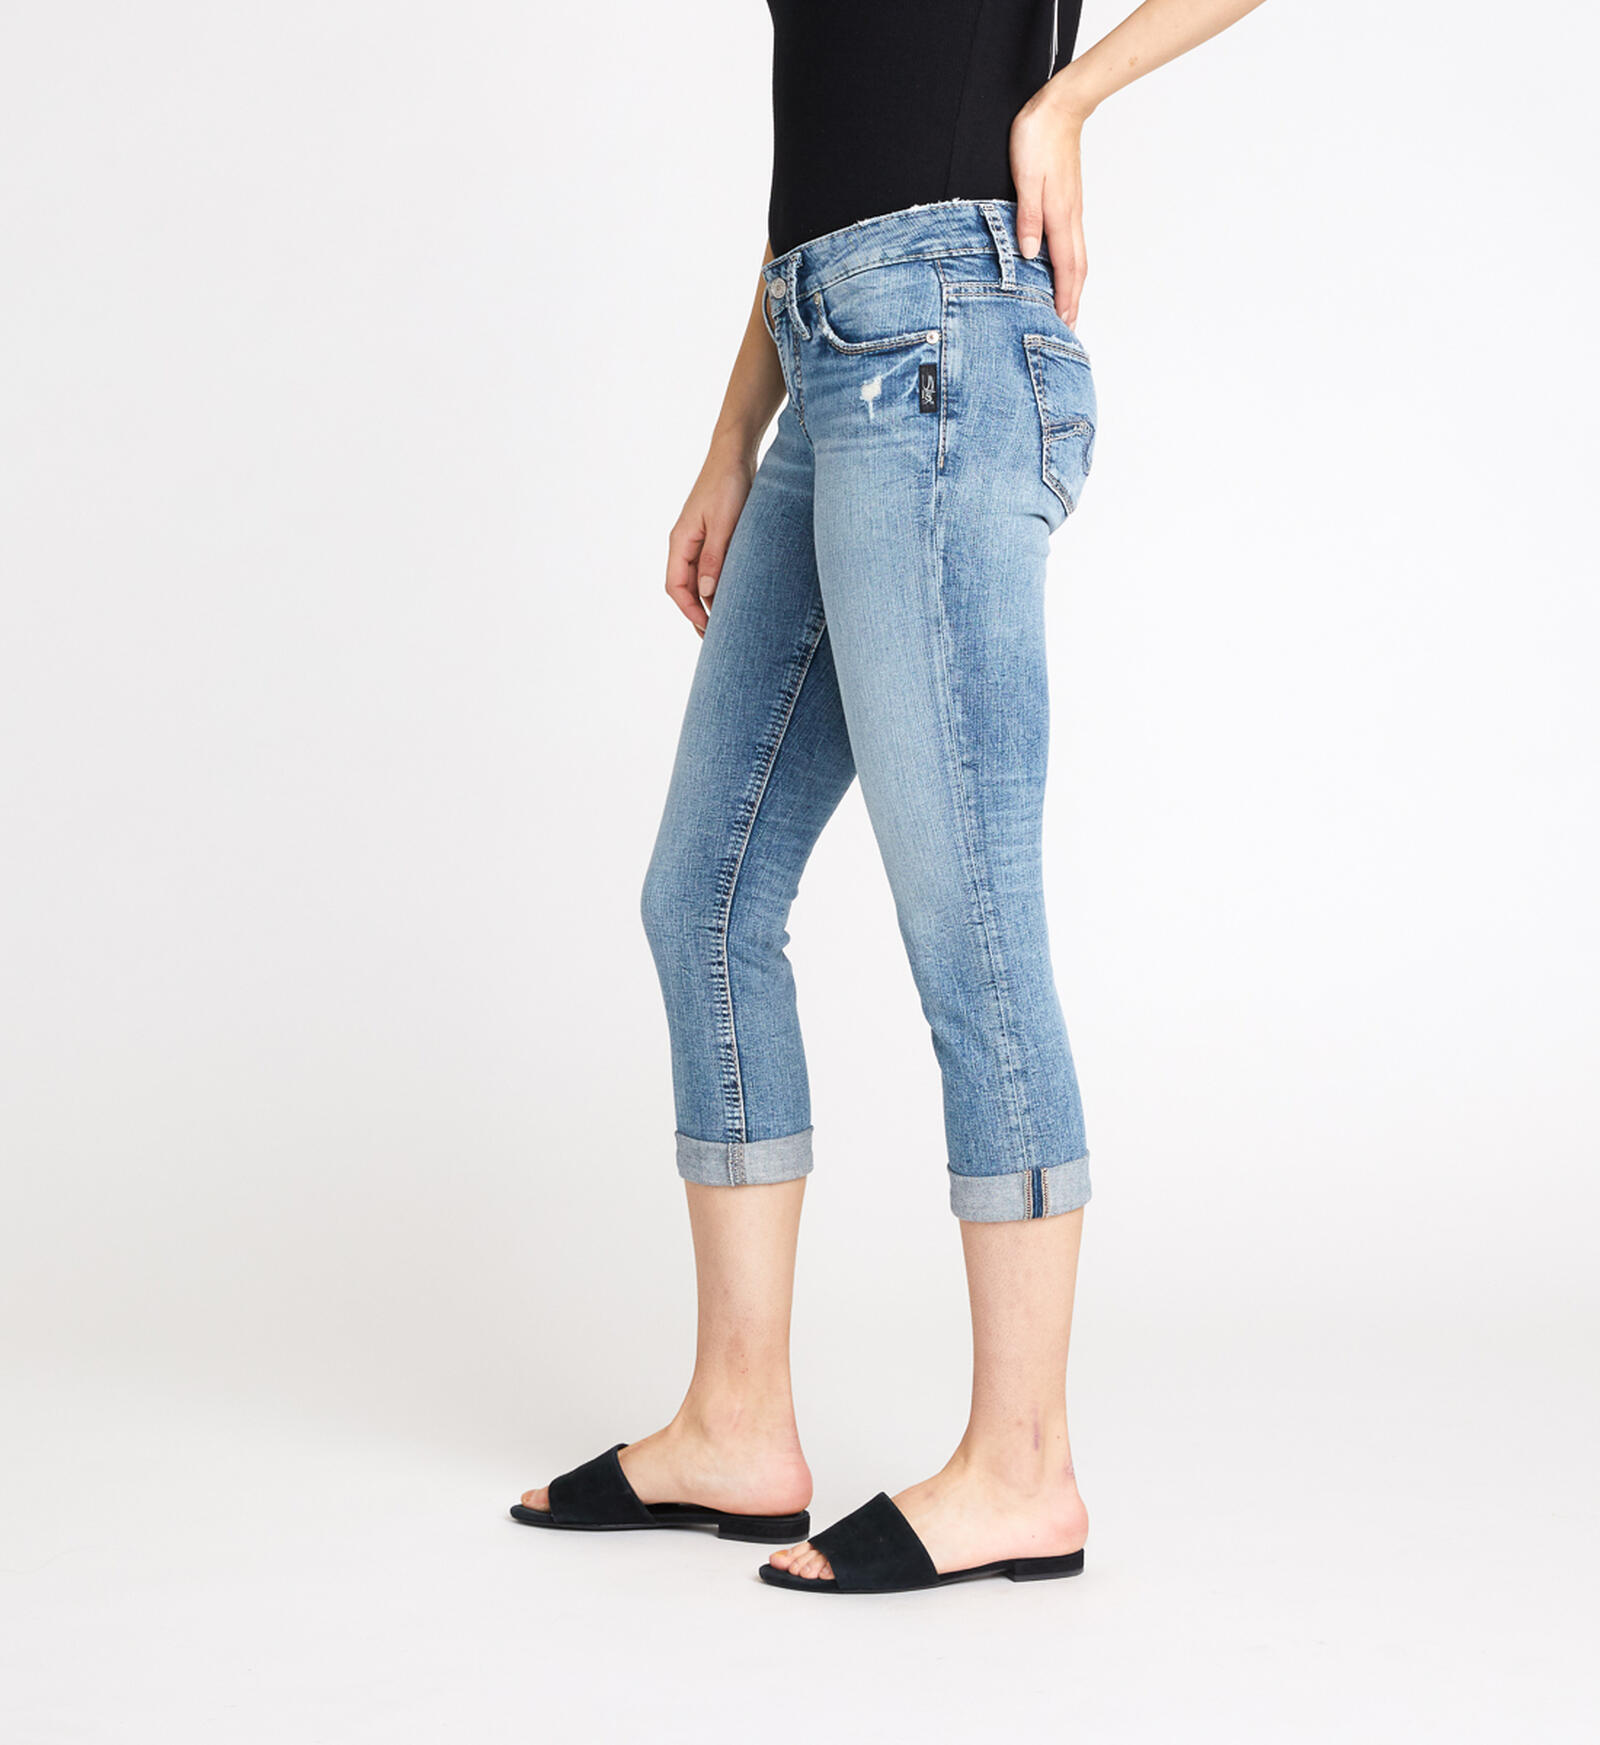 Women's Stretch Jeans Soft Denim Capri Summer Classic Regular Fit Mid Rise  Capri Jean Skinny Jeans XS-XXXXL